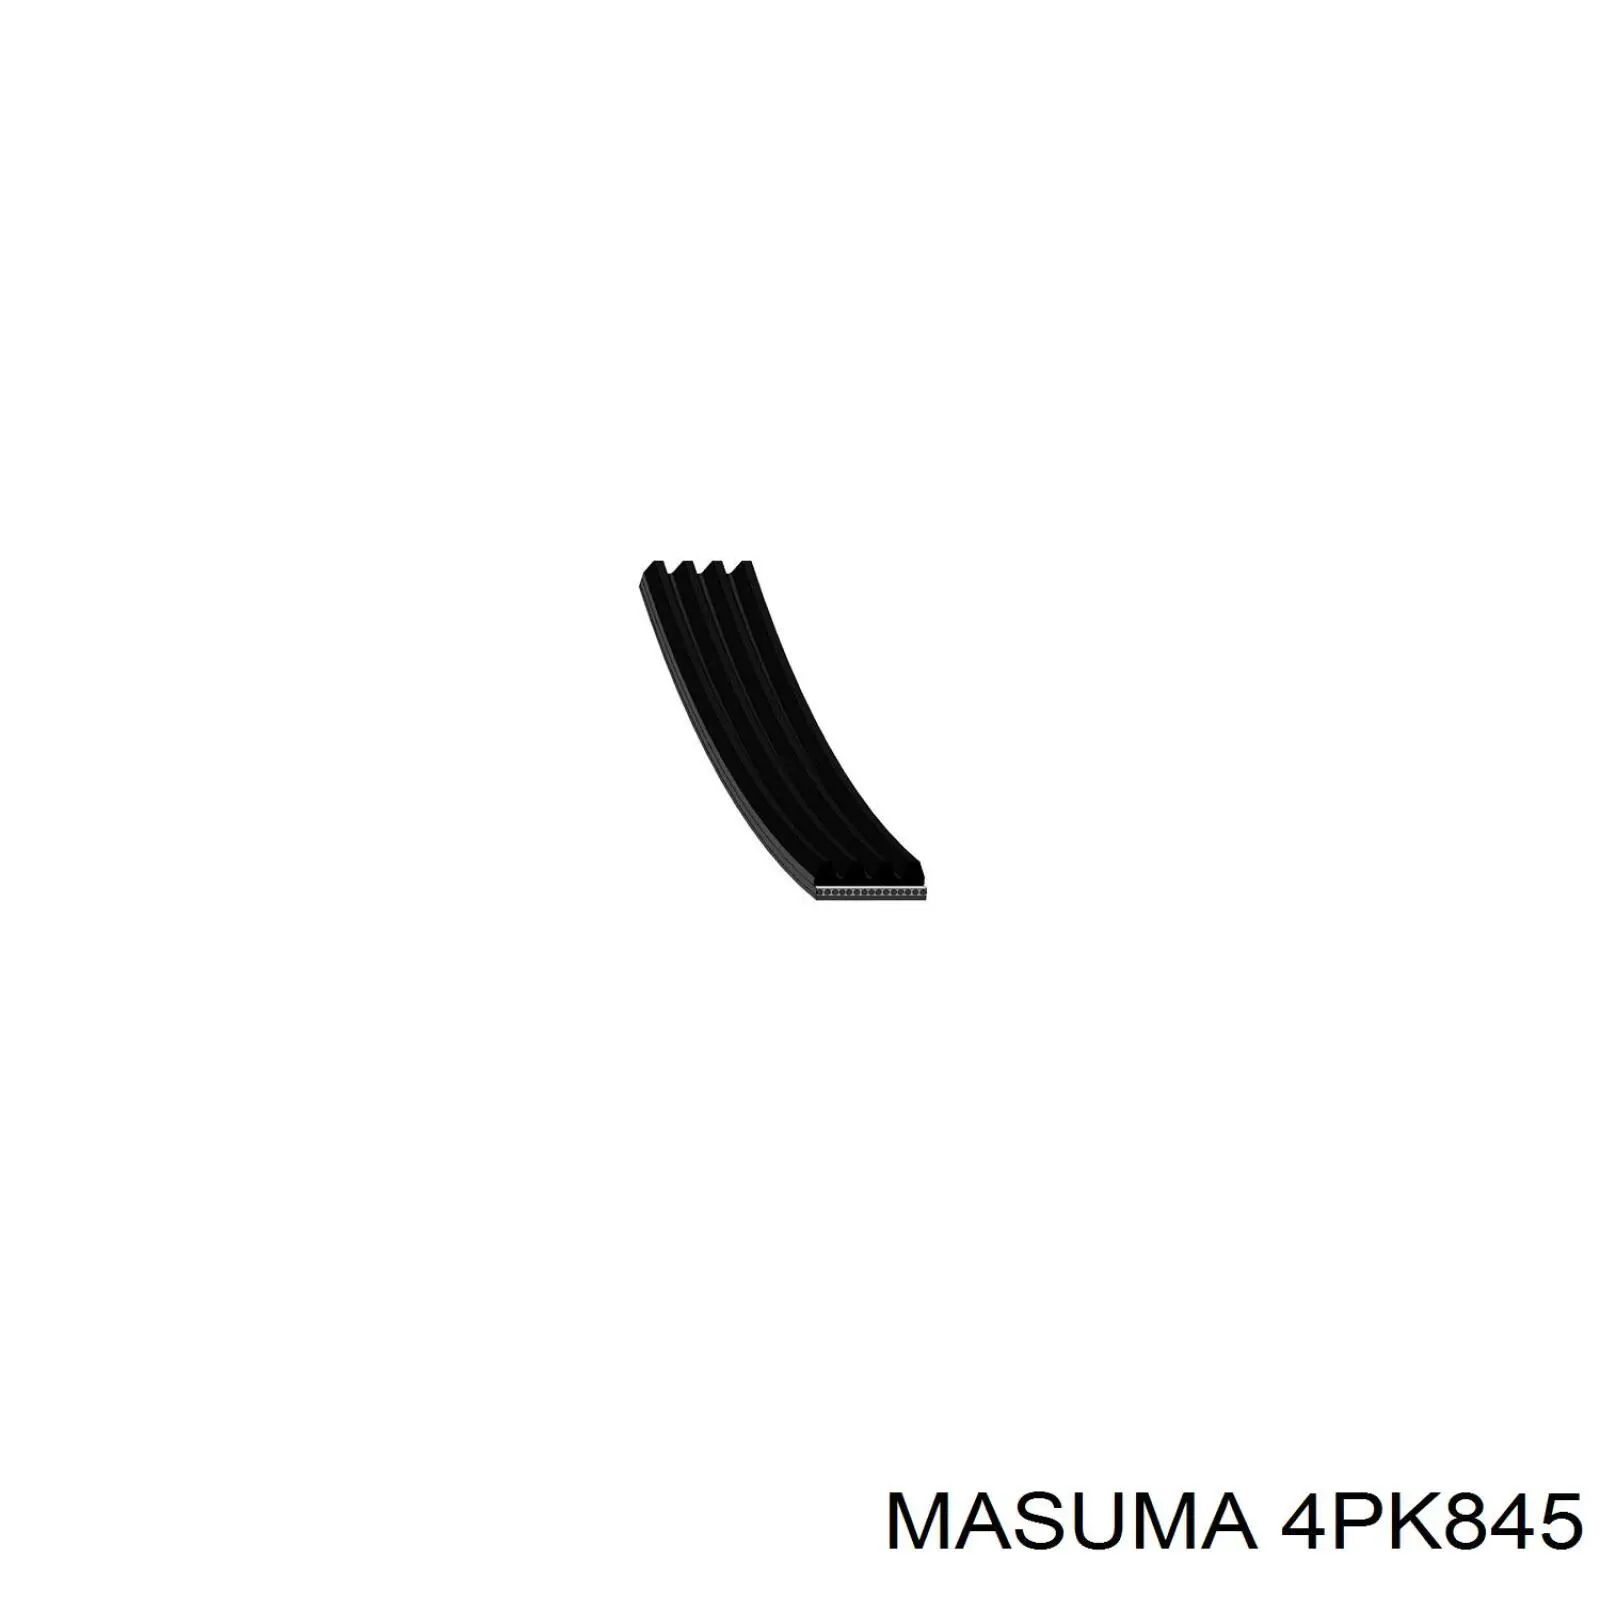 4PK845 Masuma correa trapezoidal